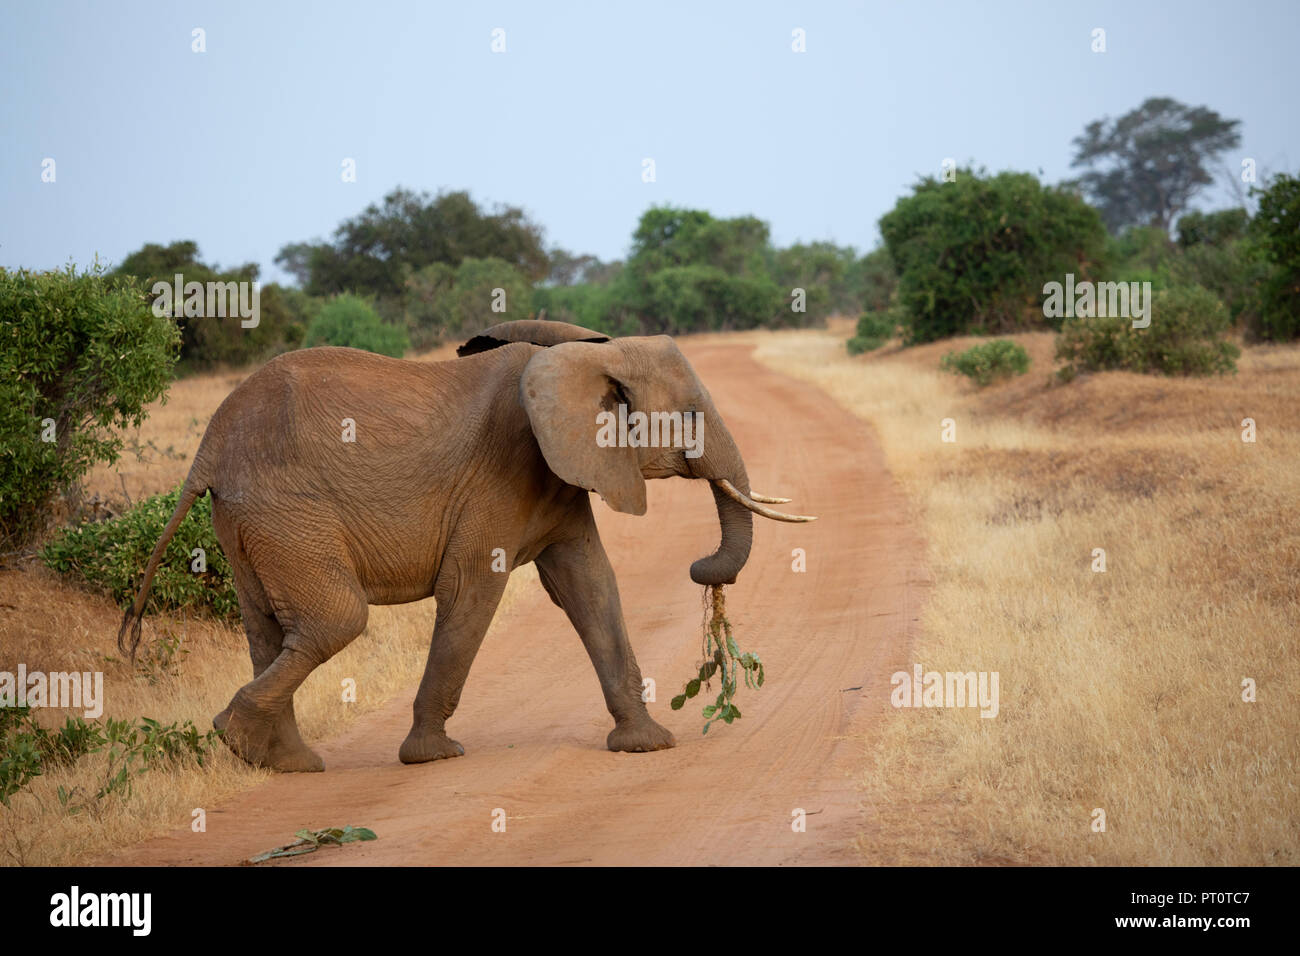 Parco nazionale orientale di tsavo, Kenya, Africa: adulto dell' elefante africano attraversando la via che porta un cactus nel tronco Foto Stock